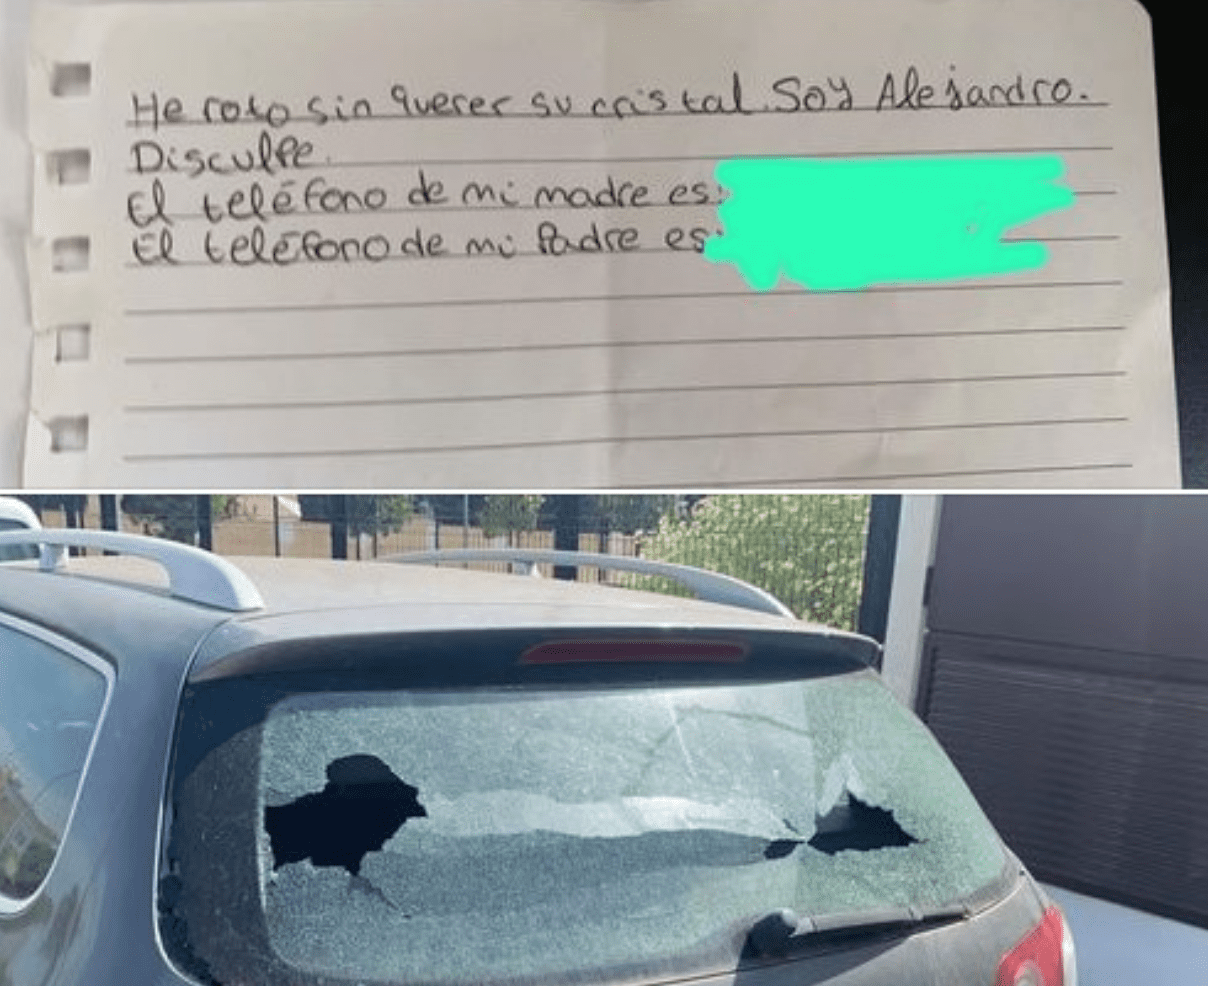 Niño rompe cristal de un auto, deja nota para repararlo y se vuelve viral